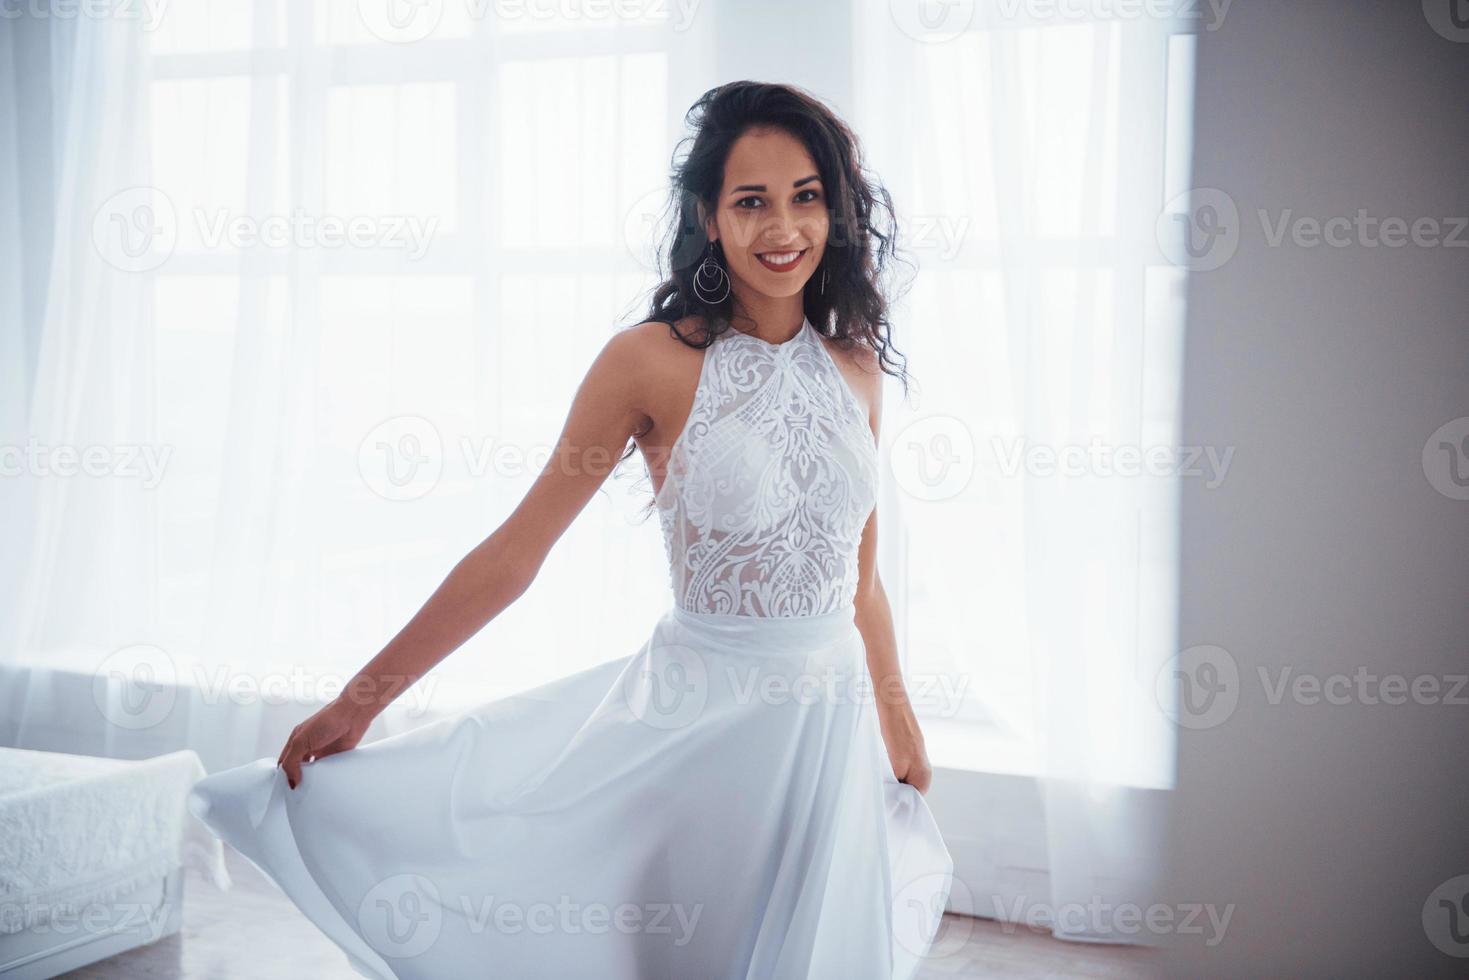 roupa clássica para danças e festas luxuosas. Mulher bonita em um vestido branco fica em um quarto branco com a luz do dia entrando pelas janelas foto